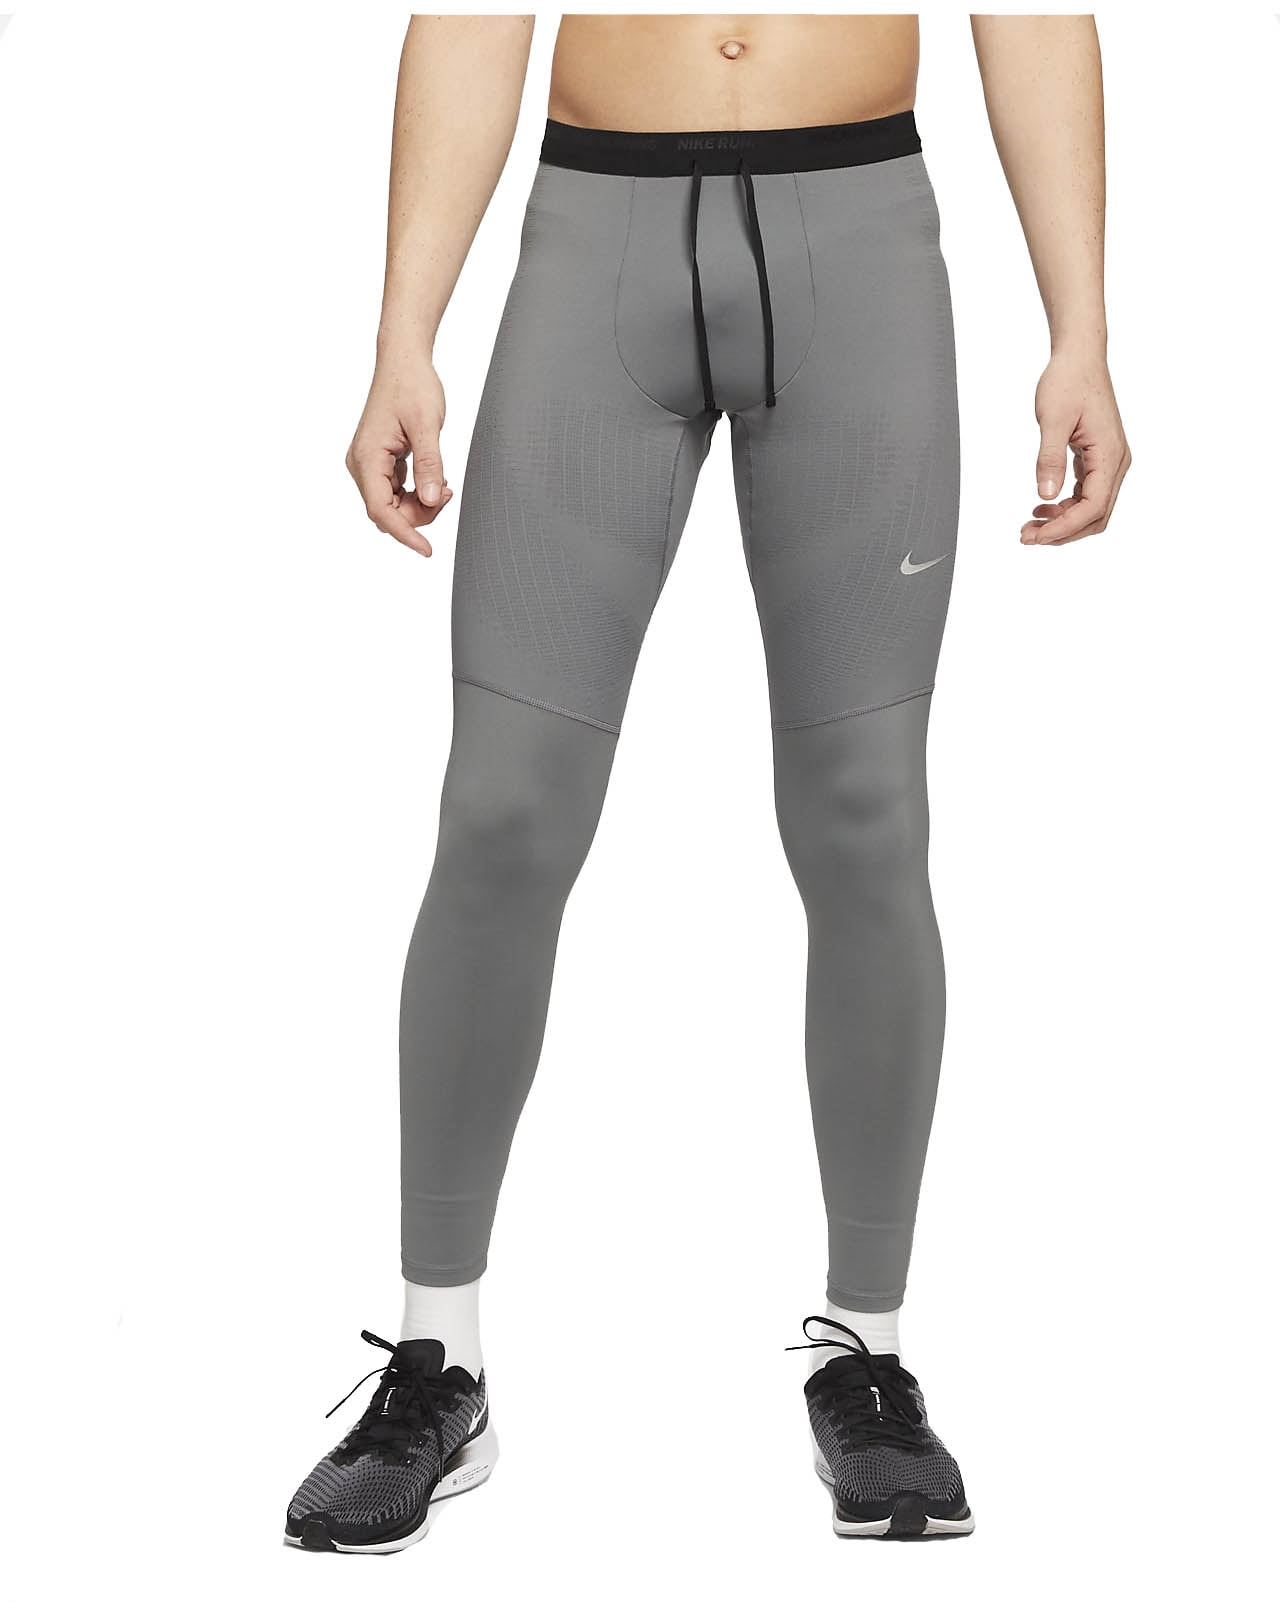 Nike Men's Phenom Elite Running Tights (Smoke Grey, Large)